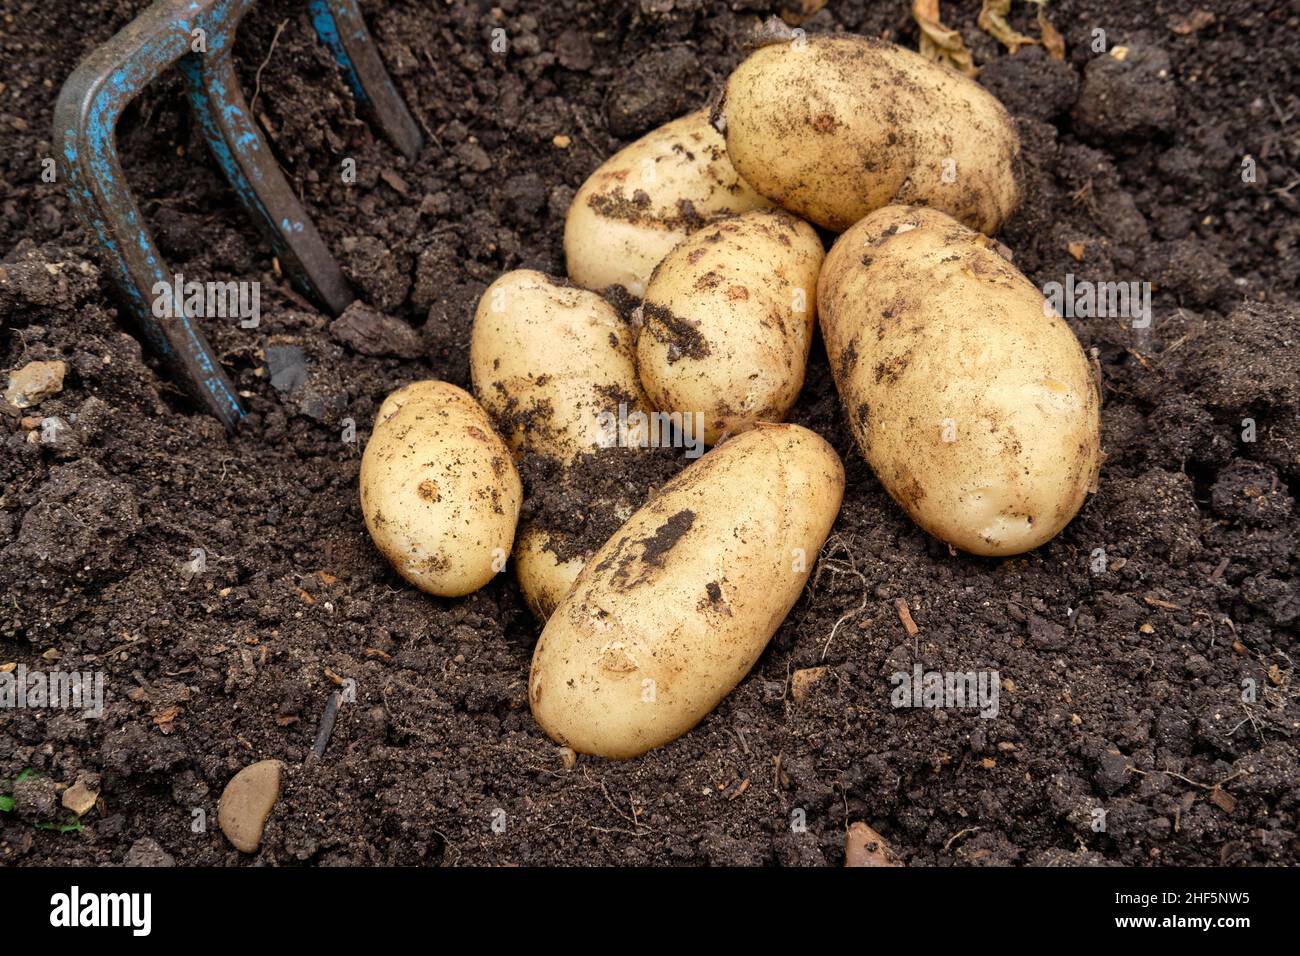 Charlotte recentemente sollevato patate nuove da una materia organica ricca riempito terreno in un giardino vegetale letto sollevato. Foto Stock